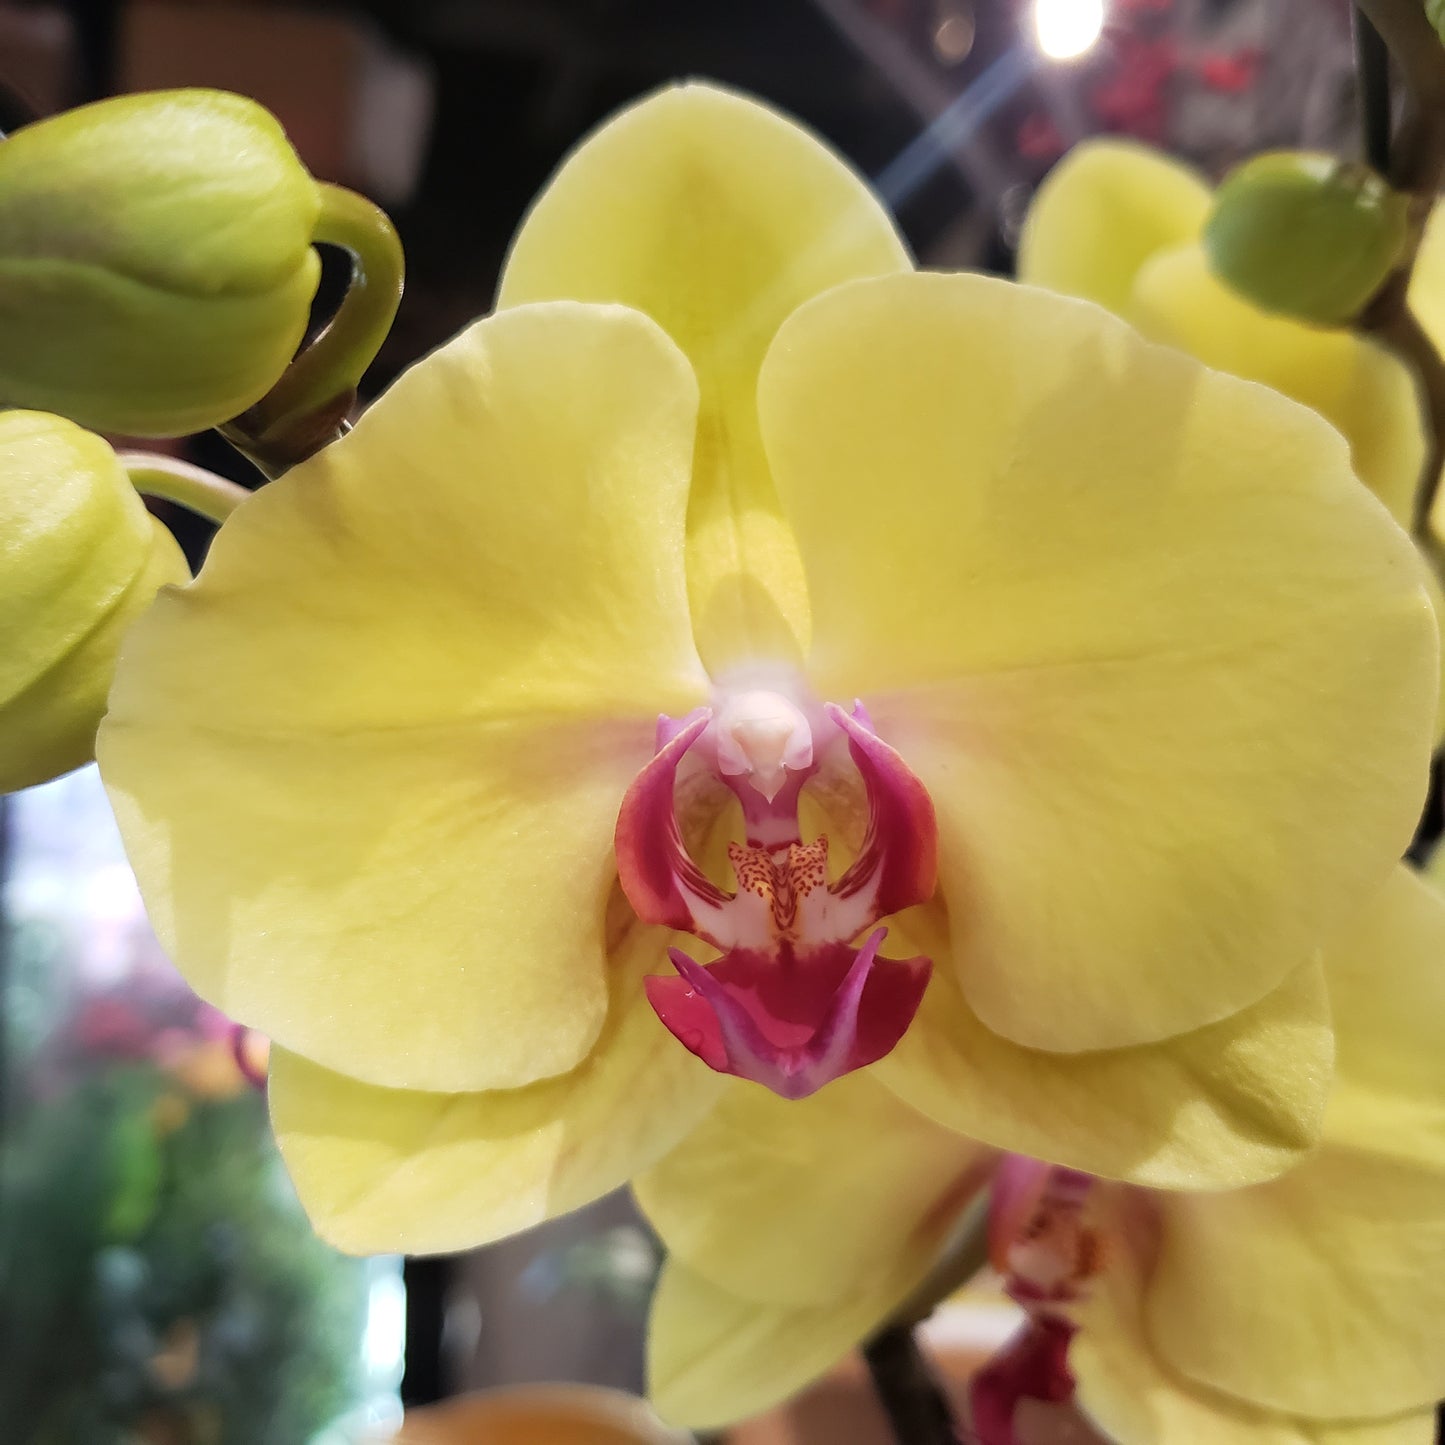 CNY012 - 12-stem Orchid Arrangement